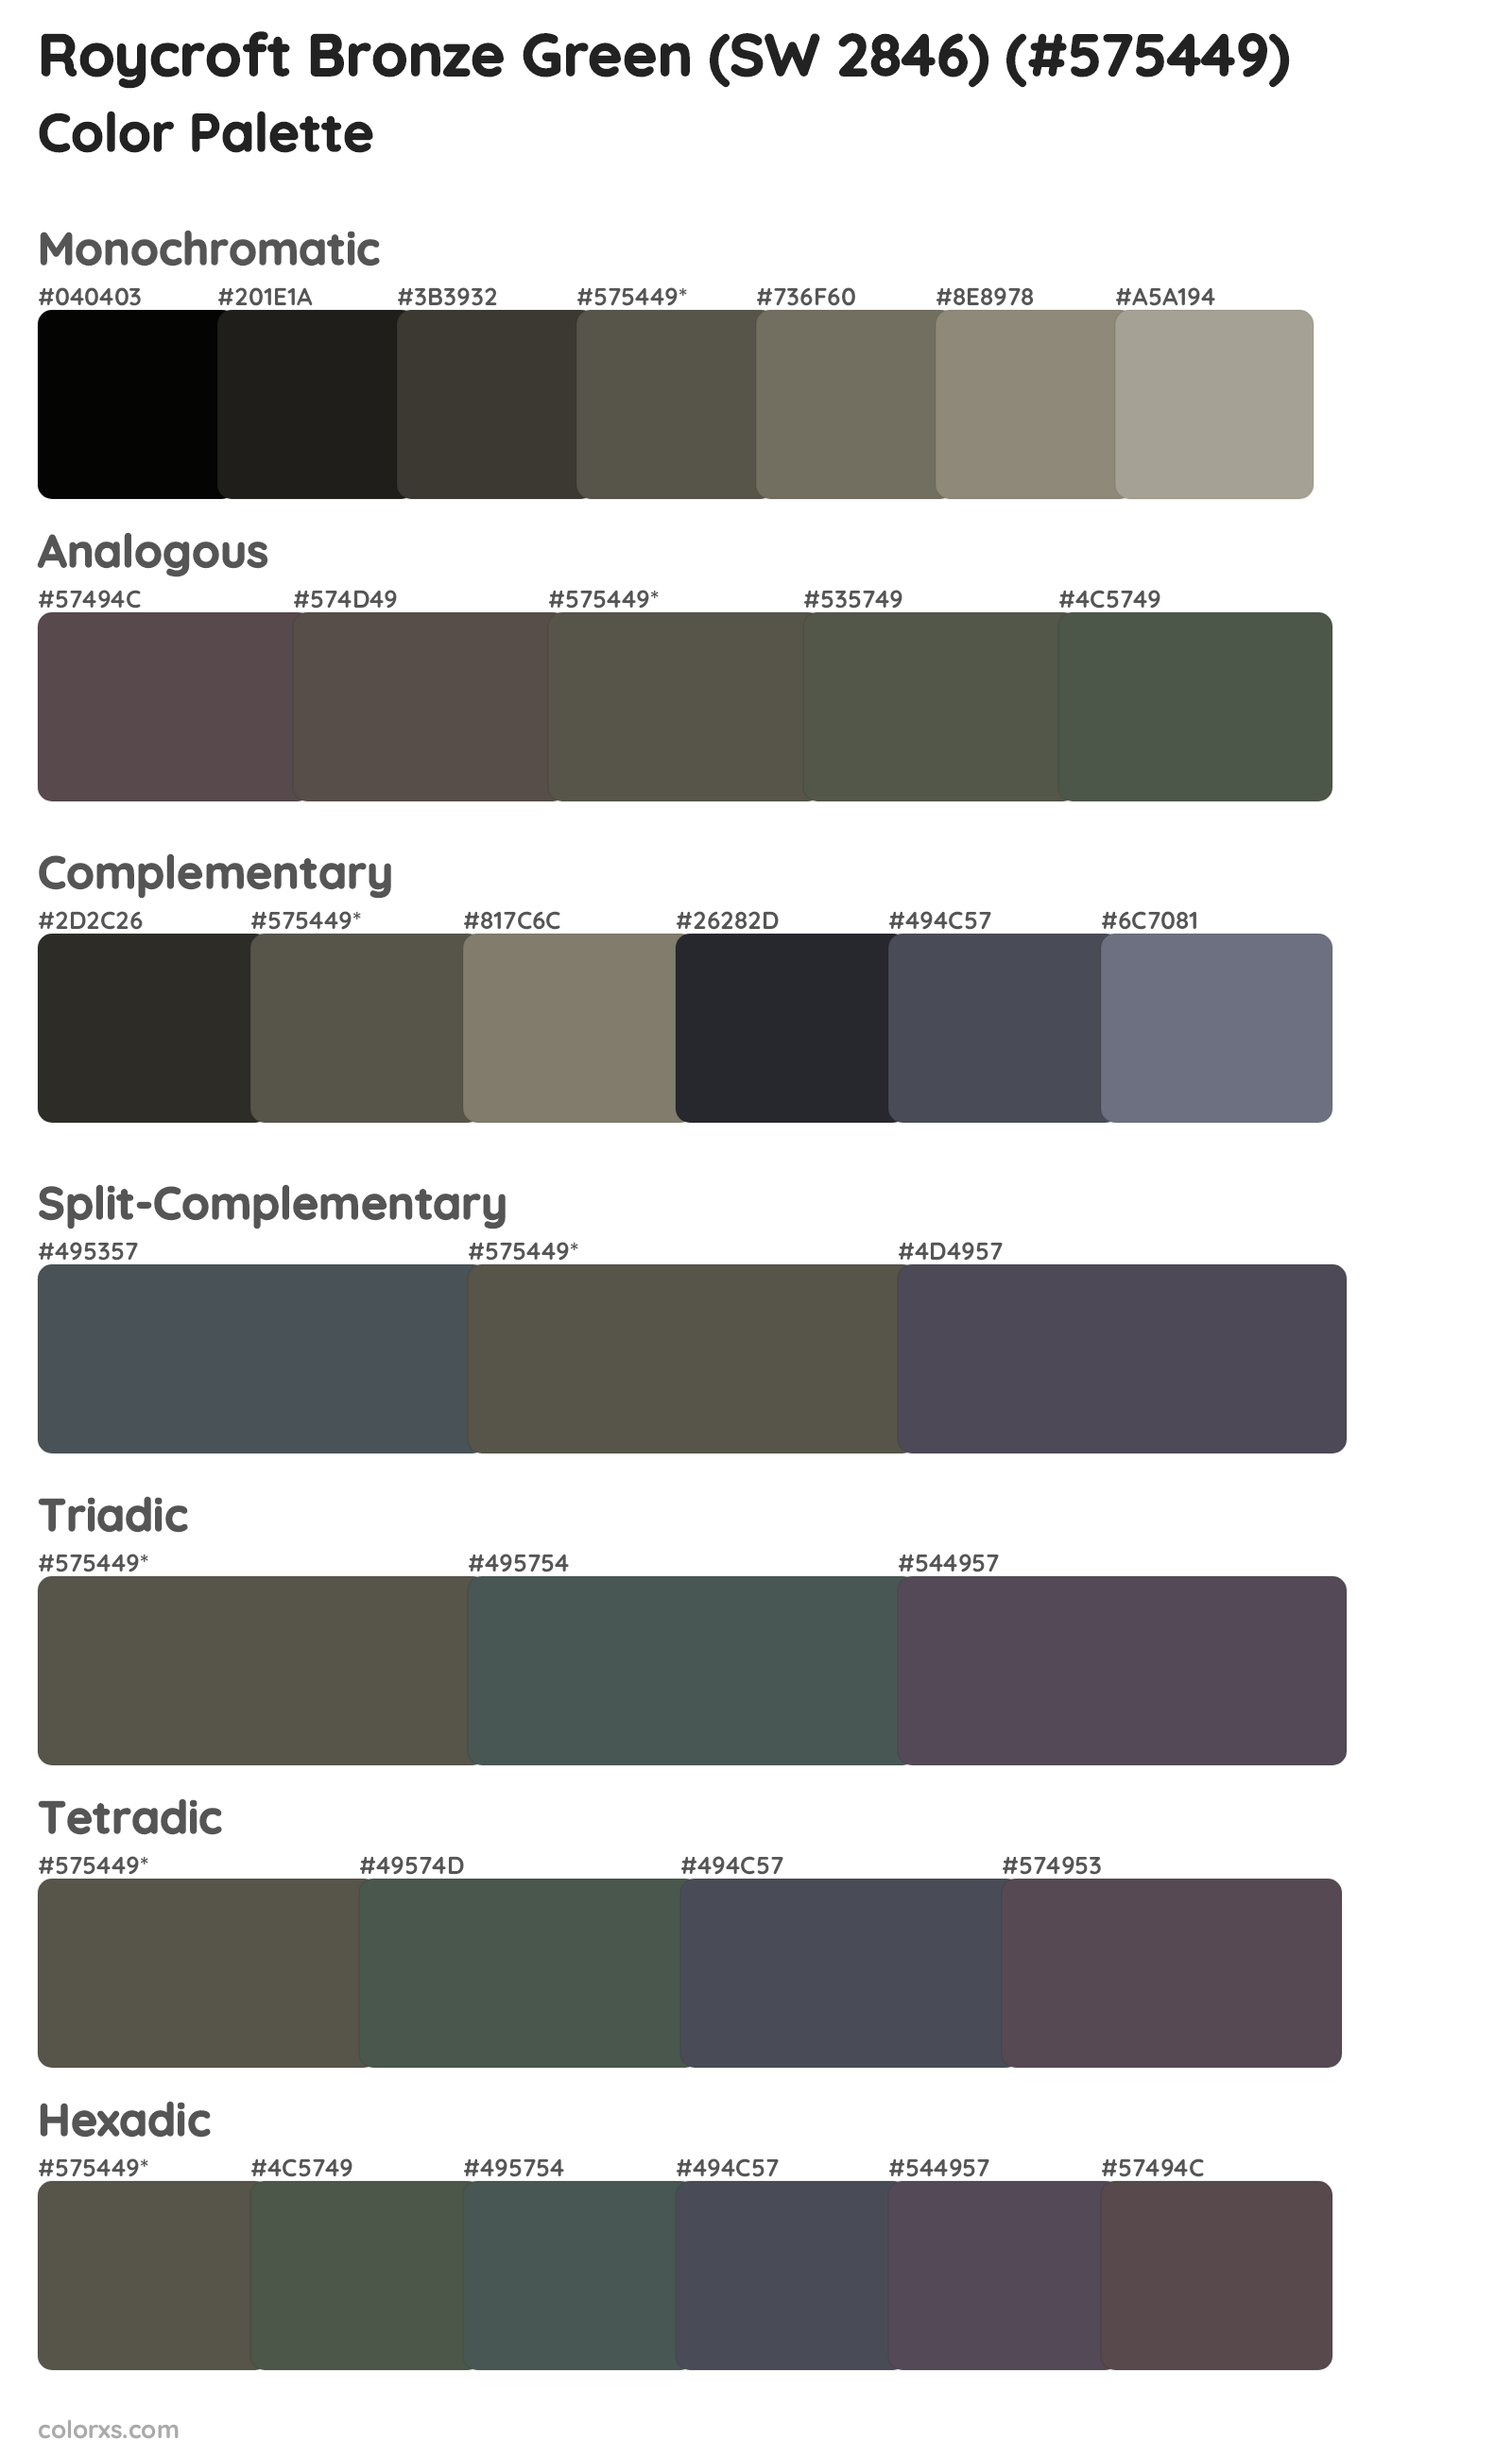 Roycroft Bronze Green (SW 2846) Color Scheme Palettes